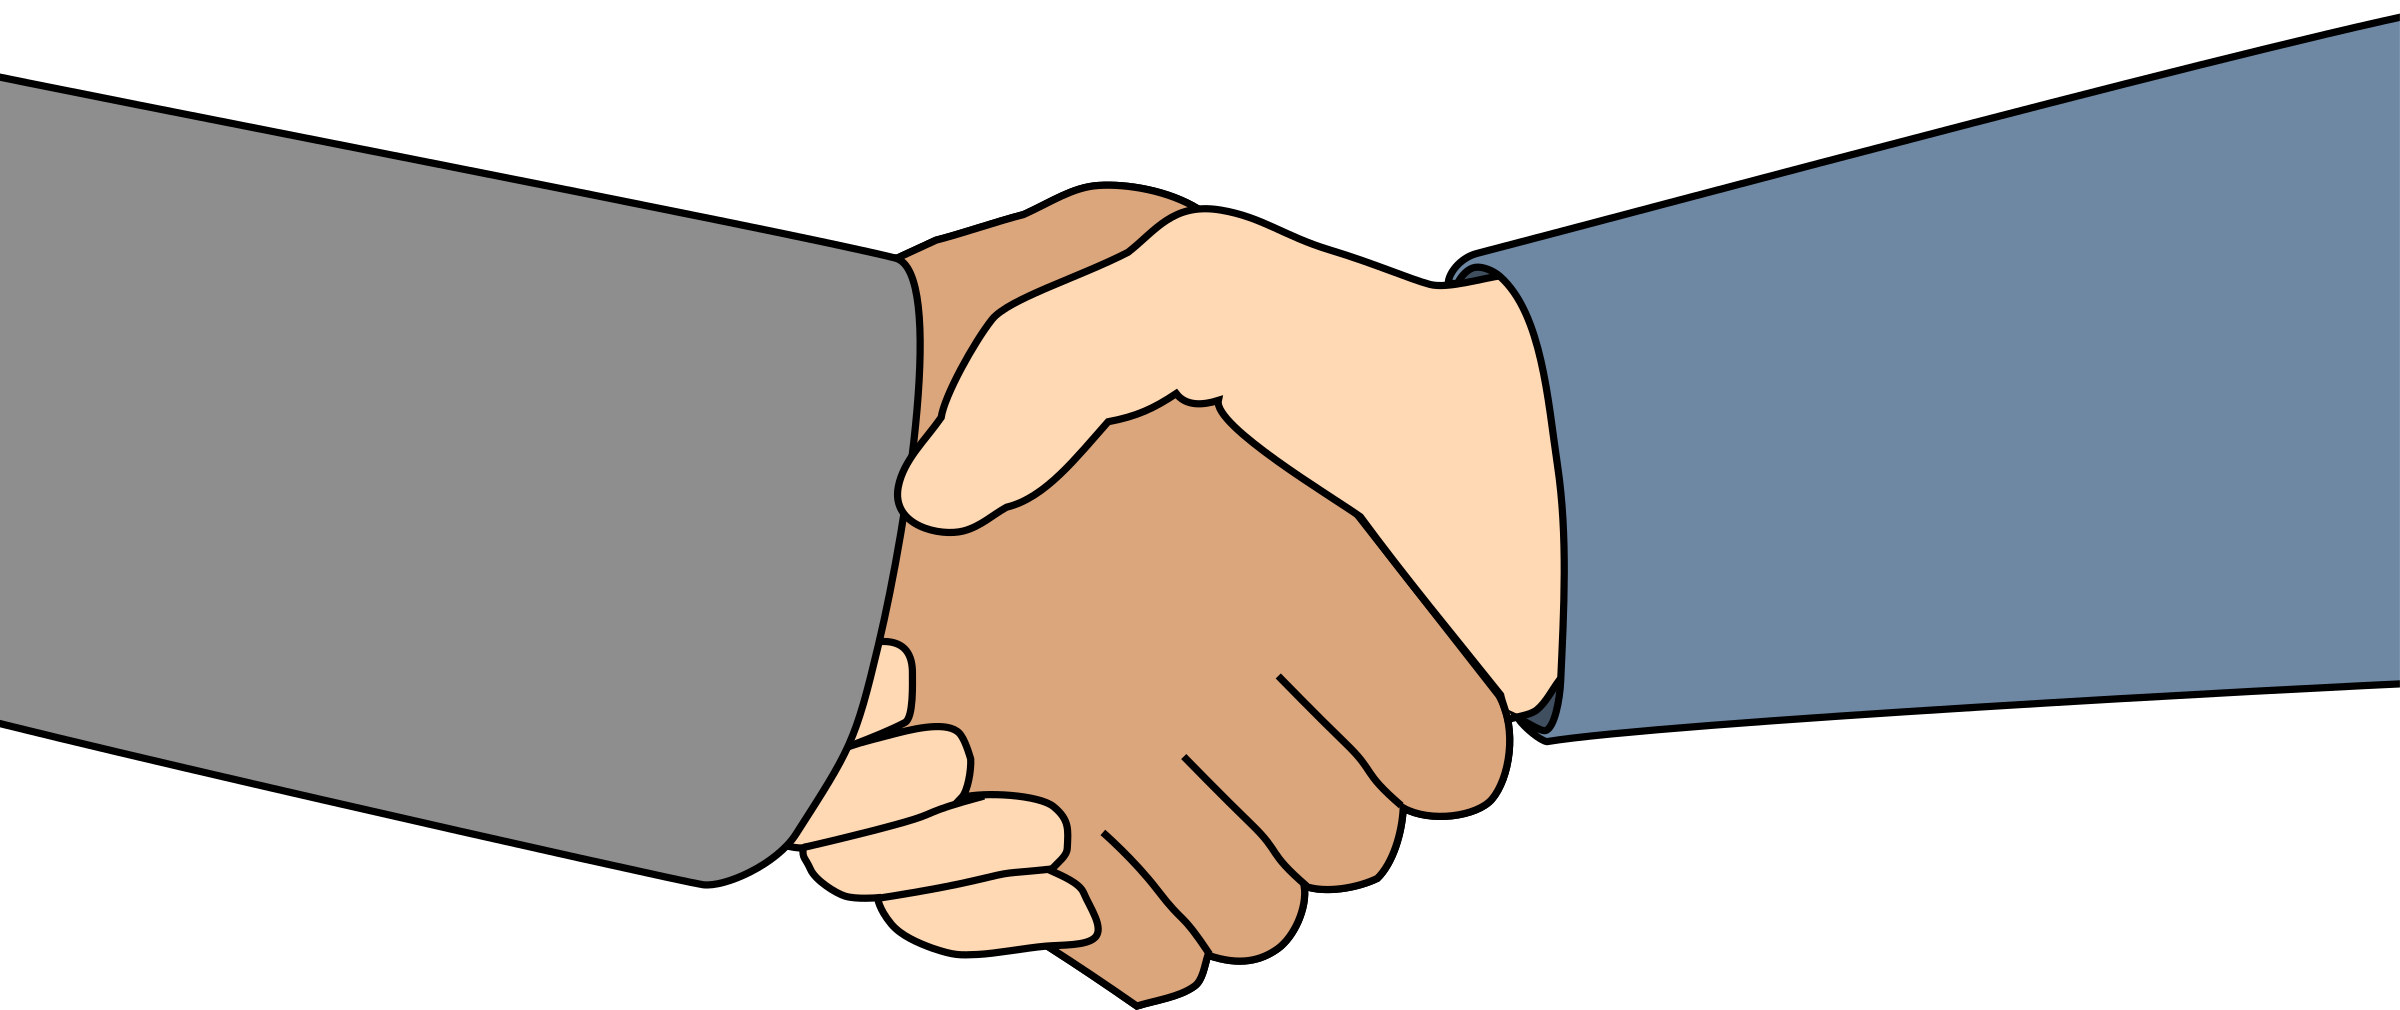 Clipart - handshake